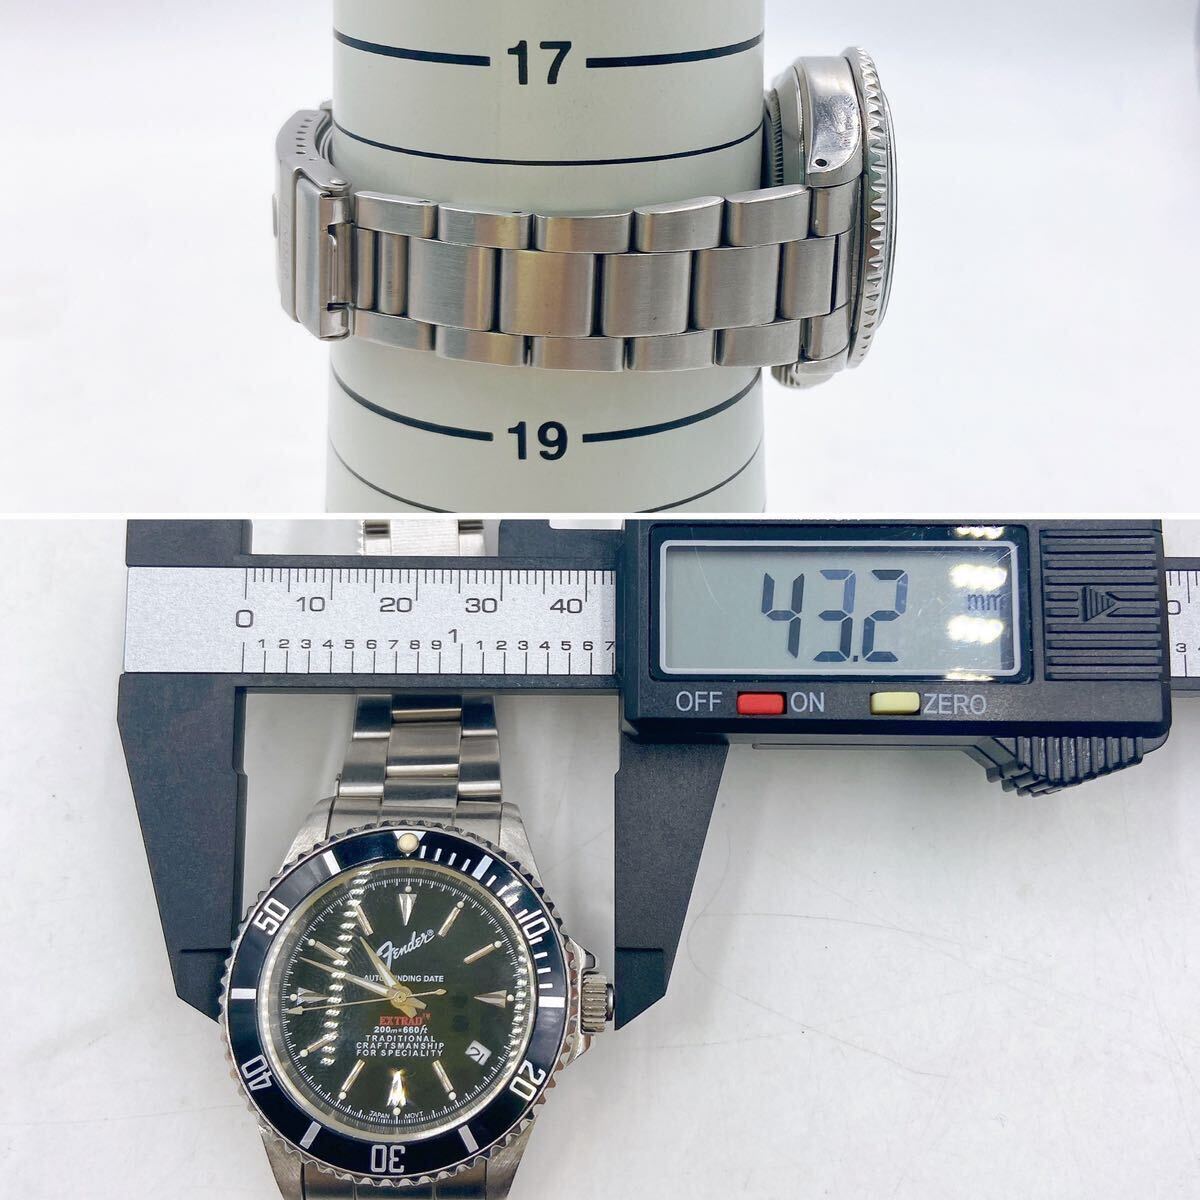 5AC027 [ работа ]FENDER JAPAN крыло Japan anniversary20th часы самозаводящиеся часы б/у текущее состояние товар 